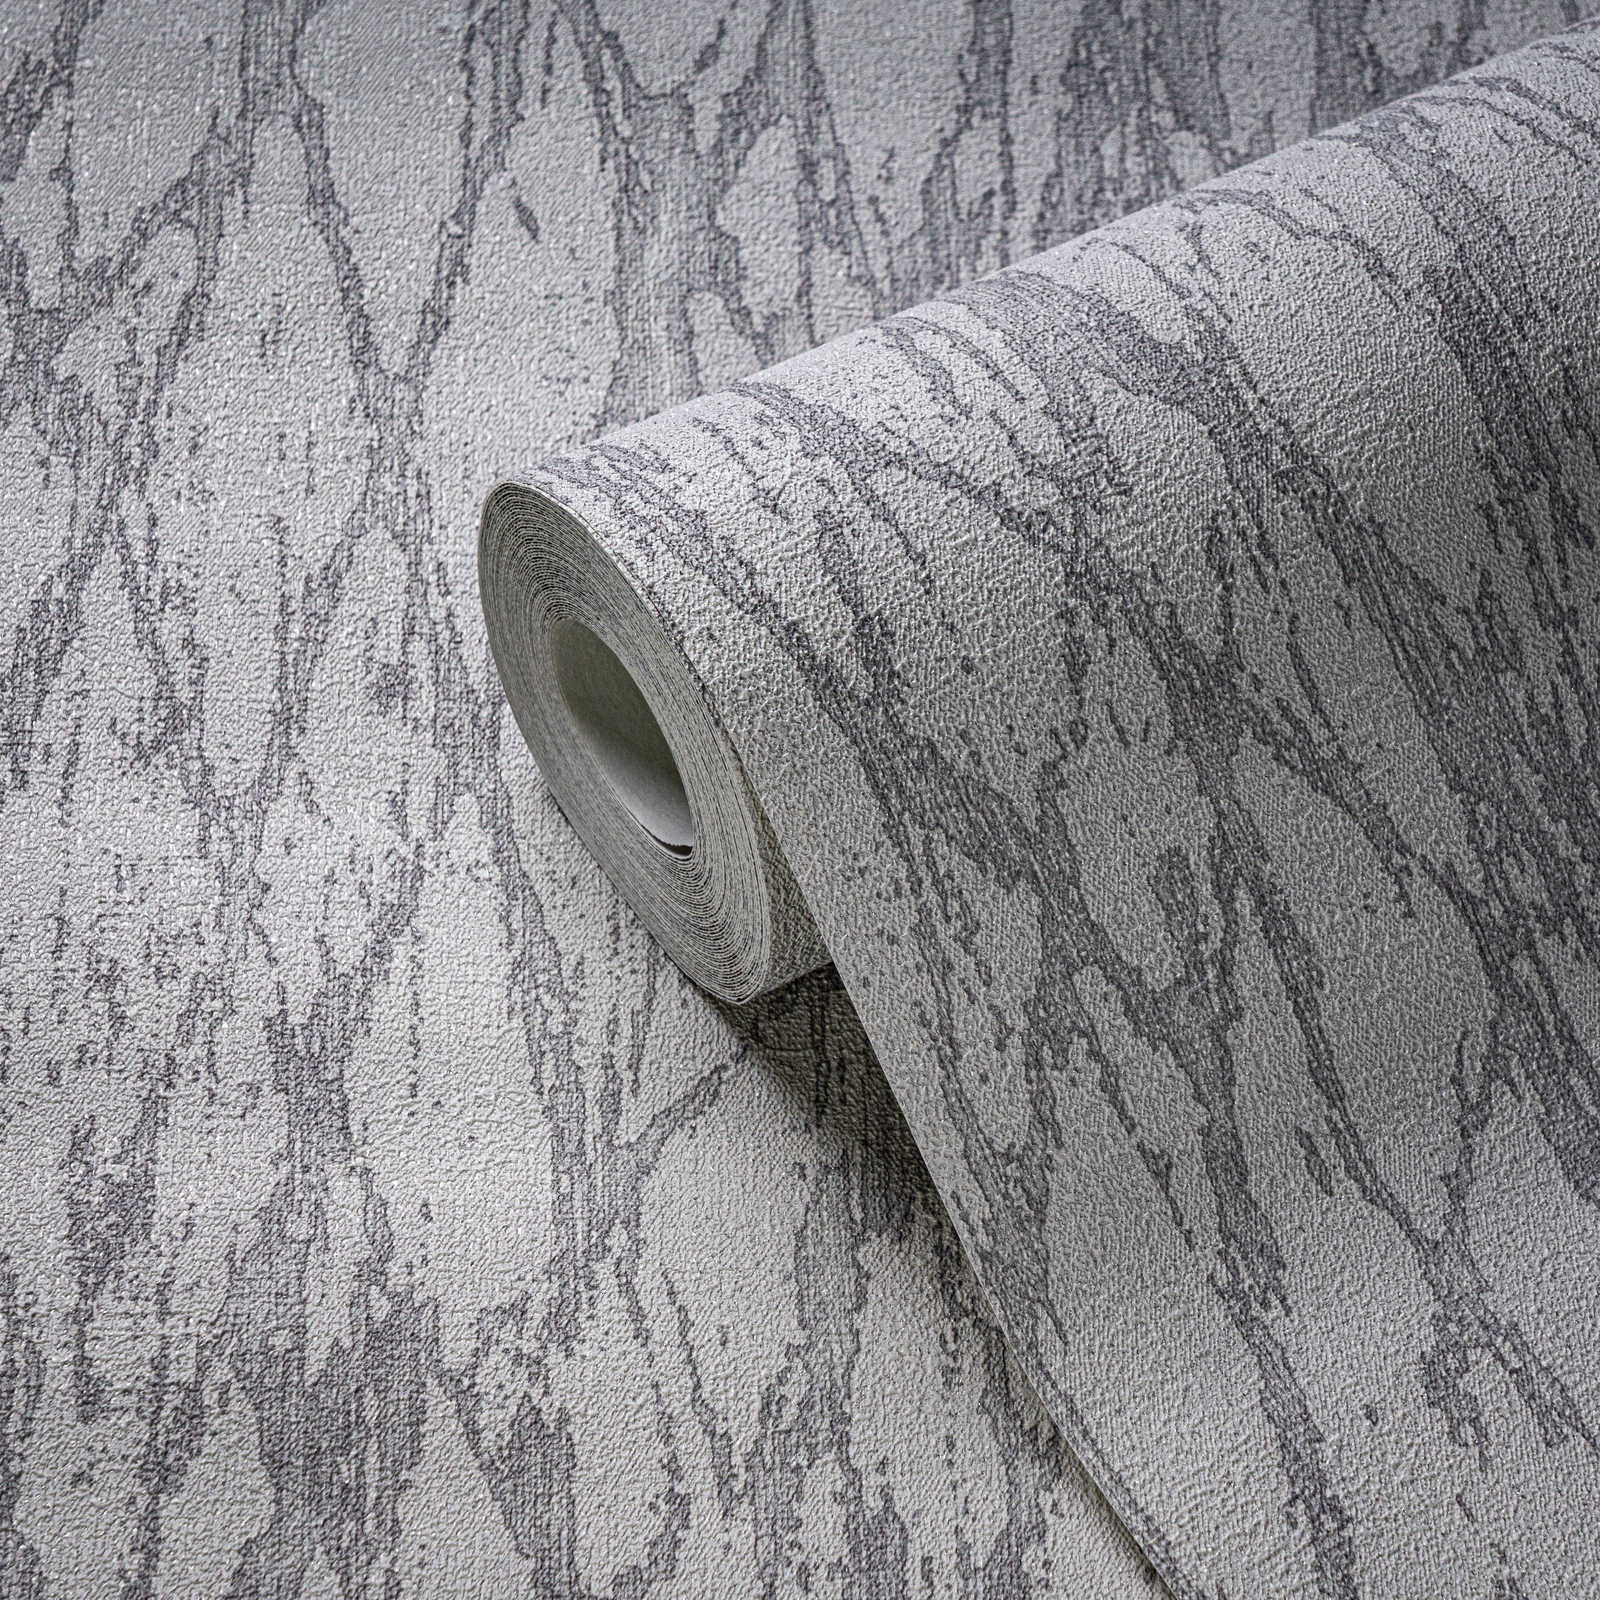             Vliestapete mit abstrakter Linien Bemusterung leicht glänzend – Weiß, Grau, Silber
        